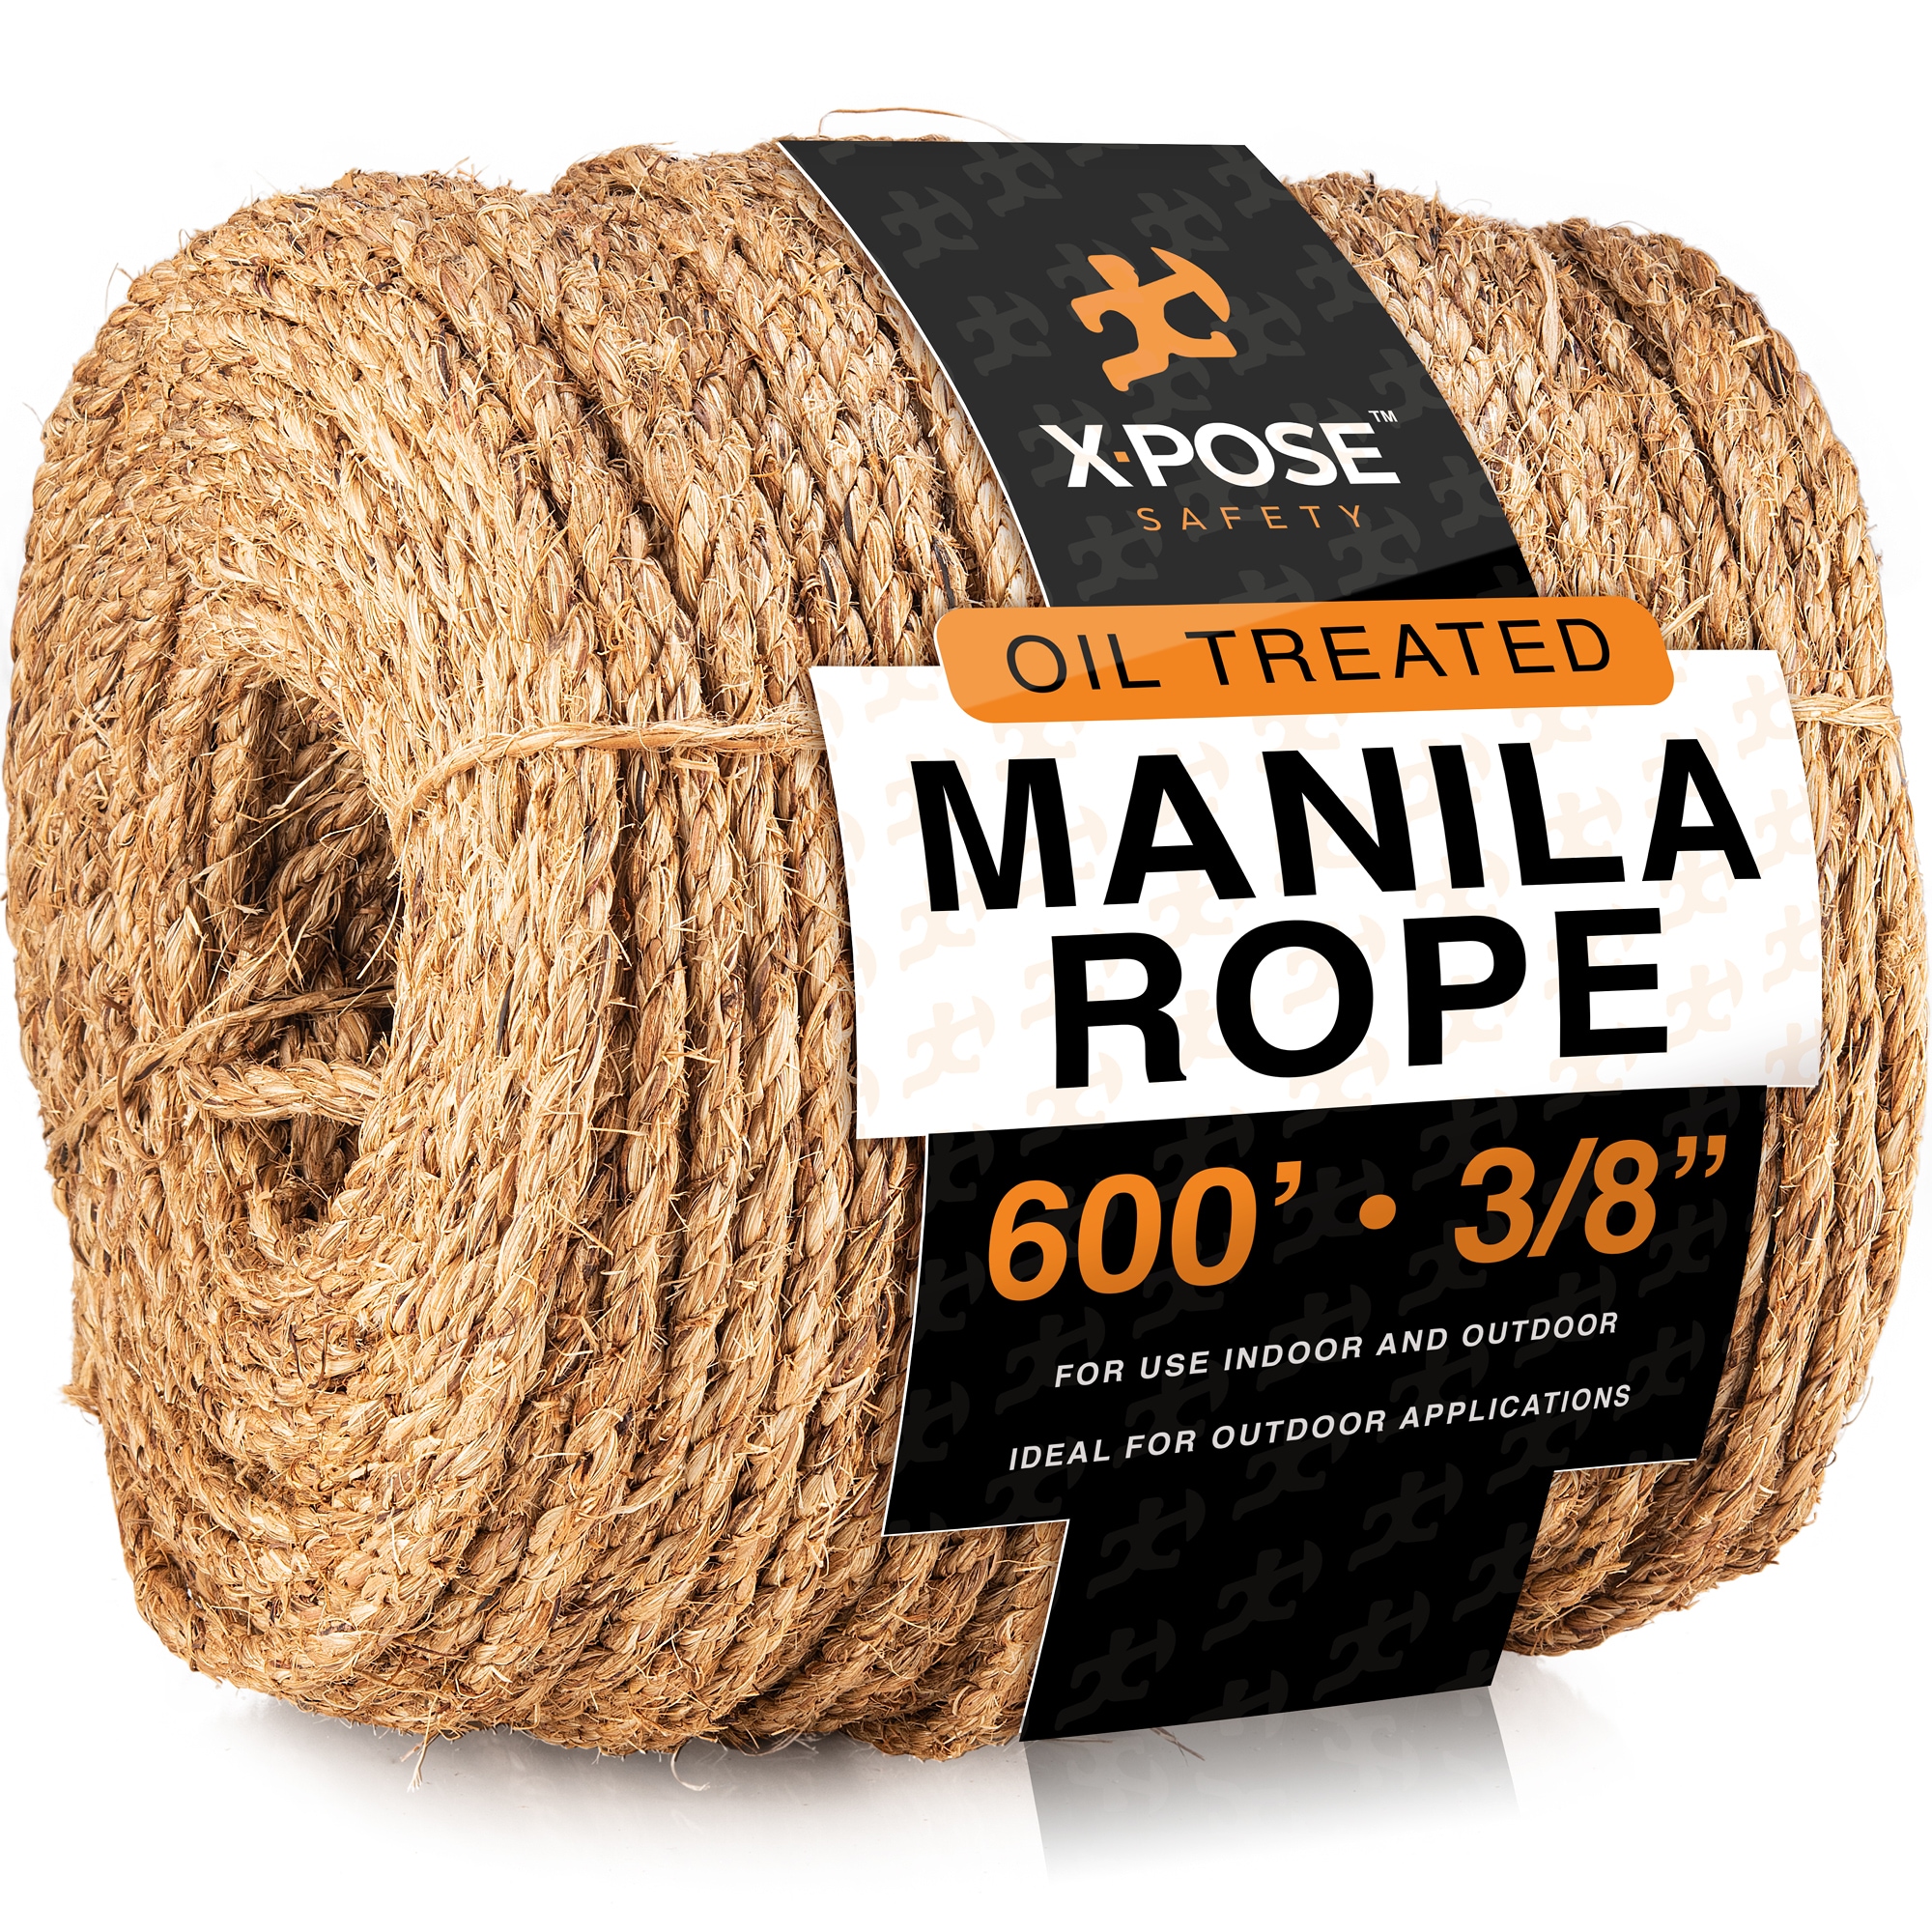 XPOSE SAFETY Manila Rope - 3/8 Inch Rope 600 Ft - 3 Strand Cordage